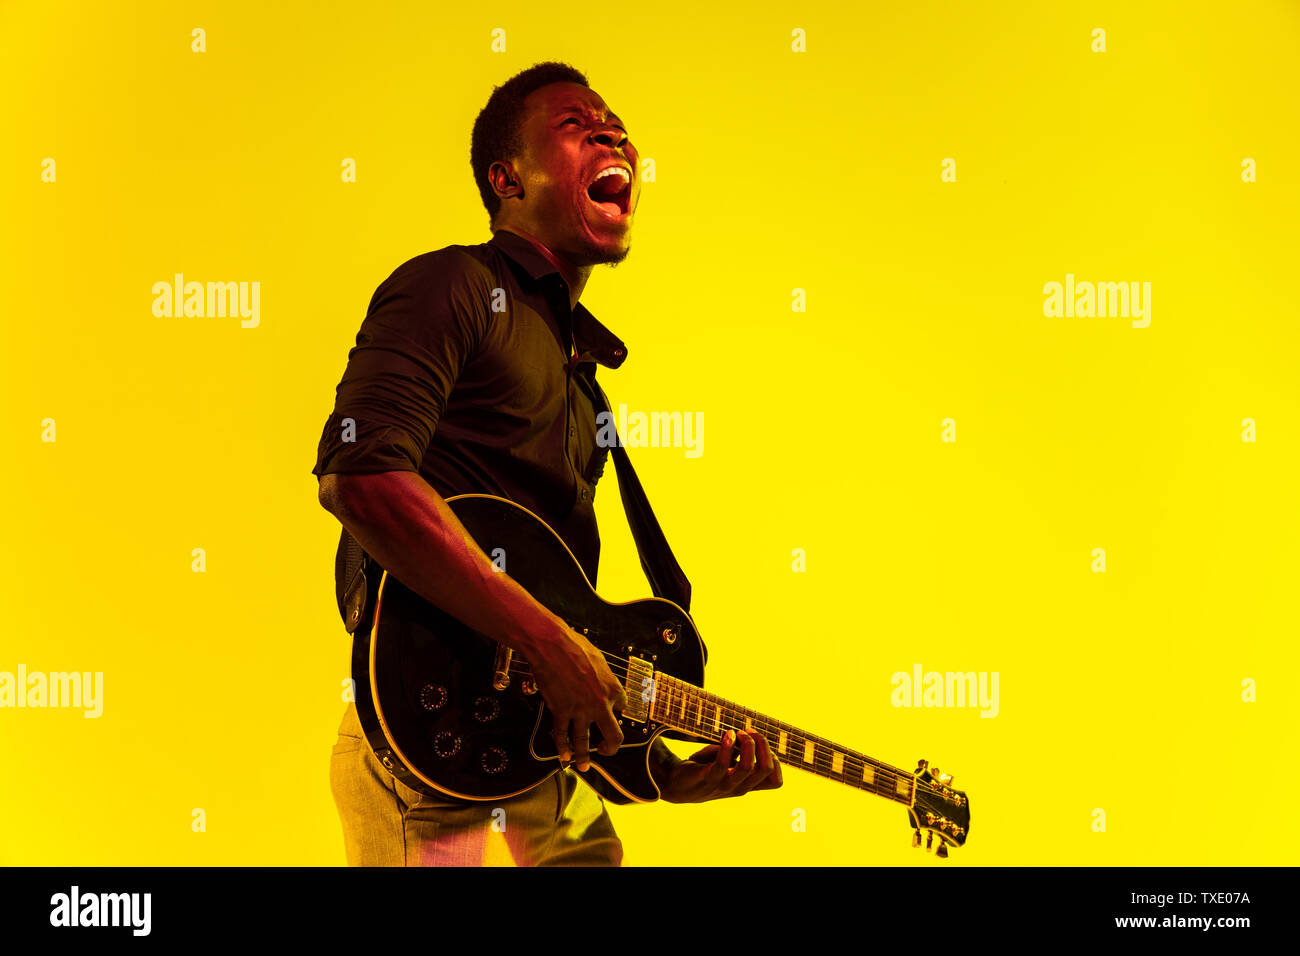 Les jeunes africains-américains musicien jouant de la guitare comme une rockstar sur fond jaune dans la région de neon light. Concept de la musique, passe-temps, festival, plein air. Guy attrayant joyeux improvisant, chantant la chanson. Banque D'Images